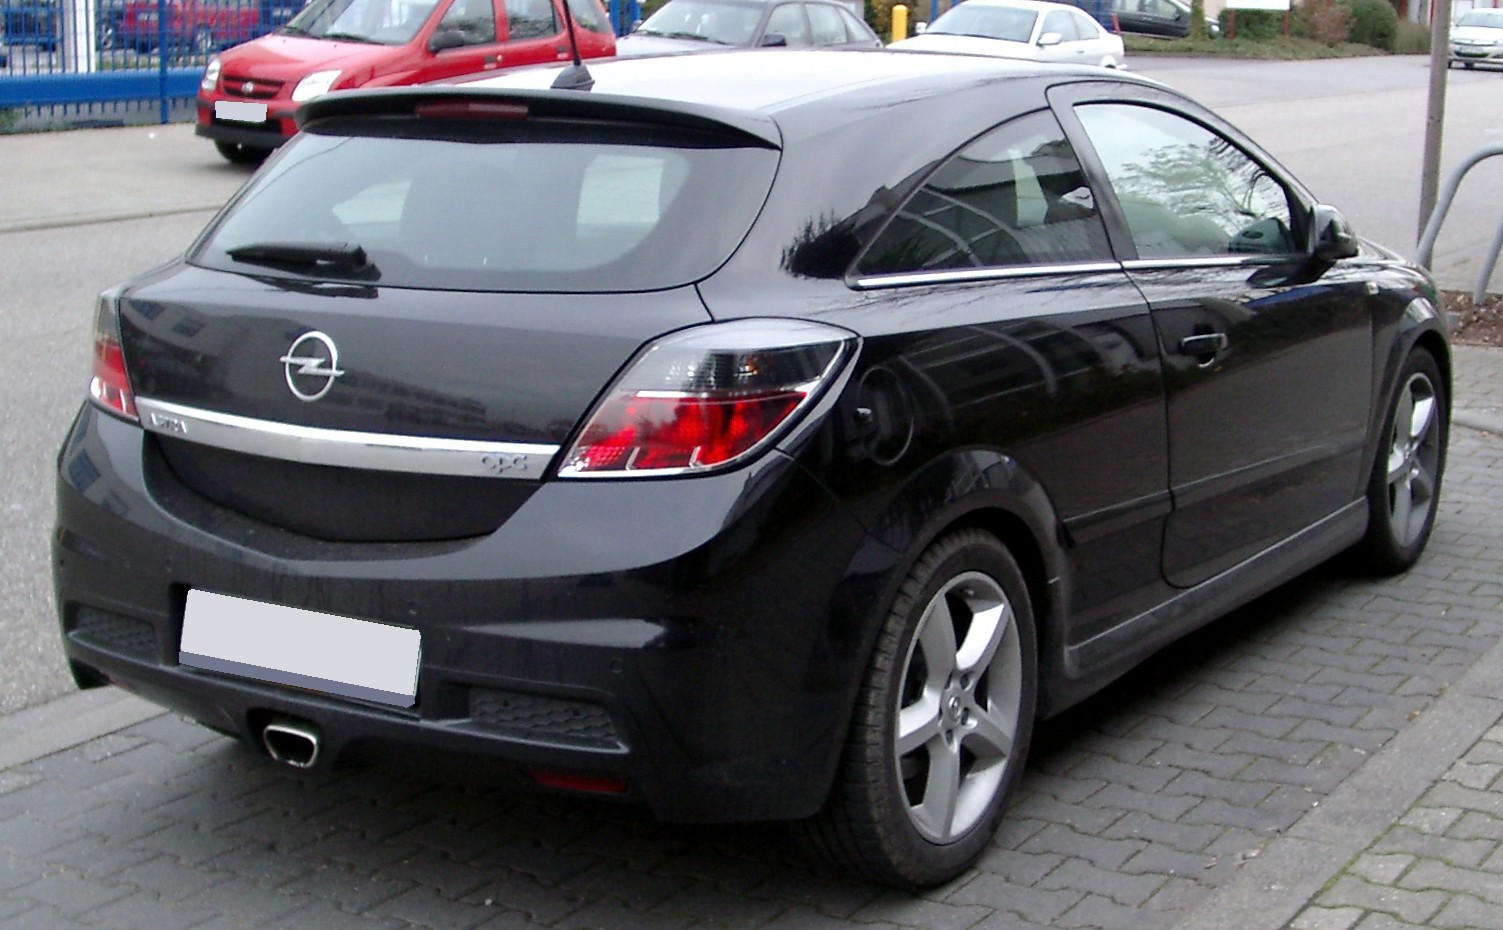 File:Opel Astra OPC rear 20080306.jpg